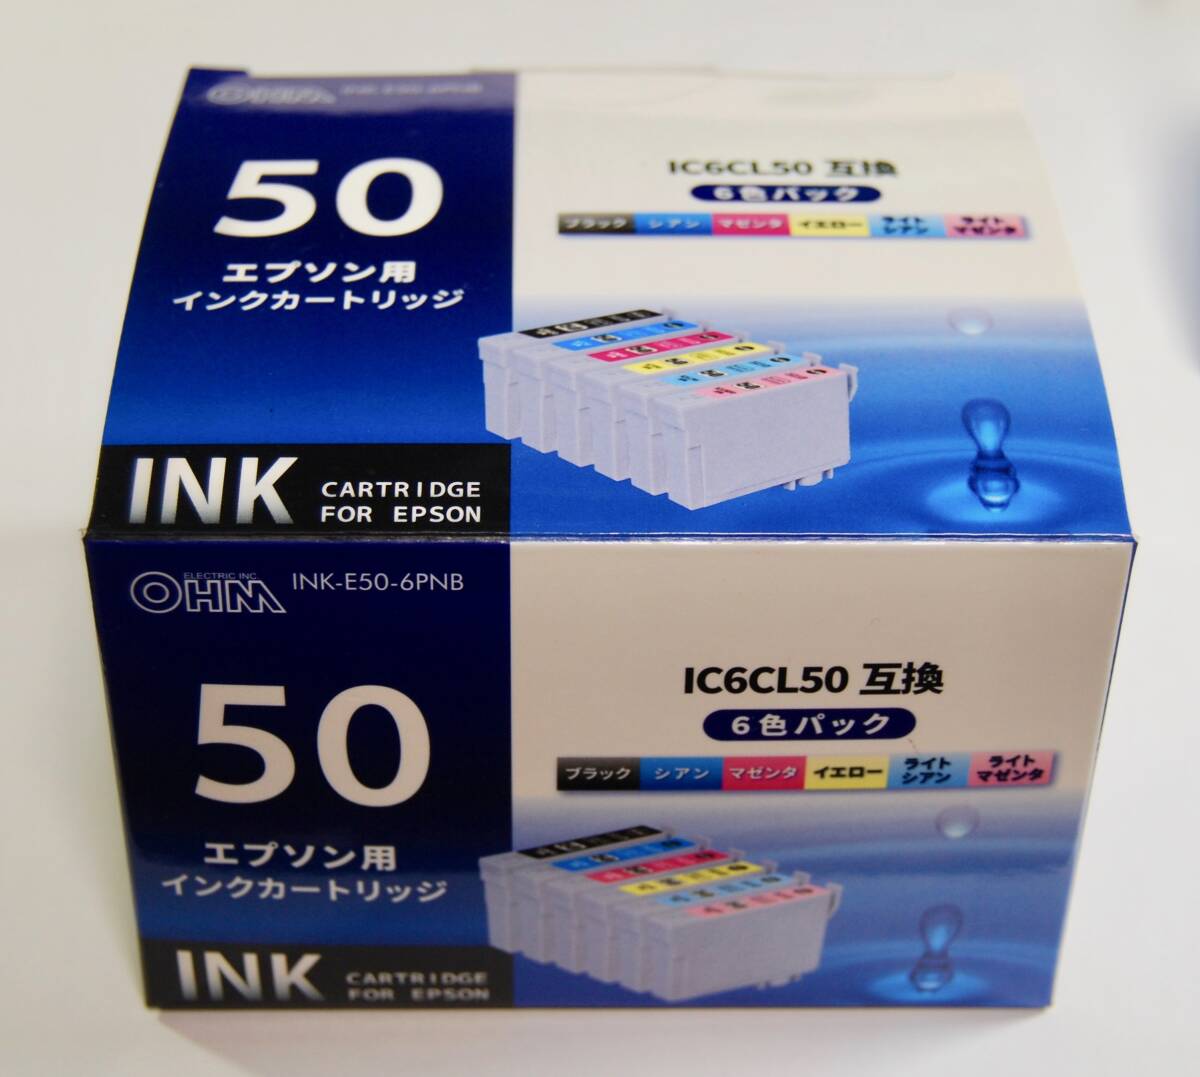 ●エプソン用インクカートリッジ IC6CL50互換 から4色5本 エプソン50シリーズ_出品は4色5本です。